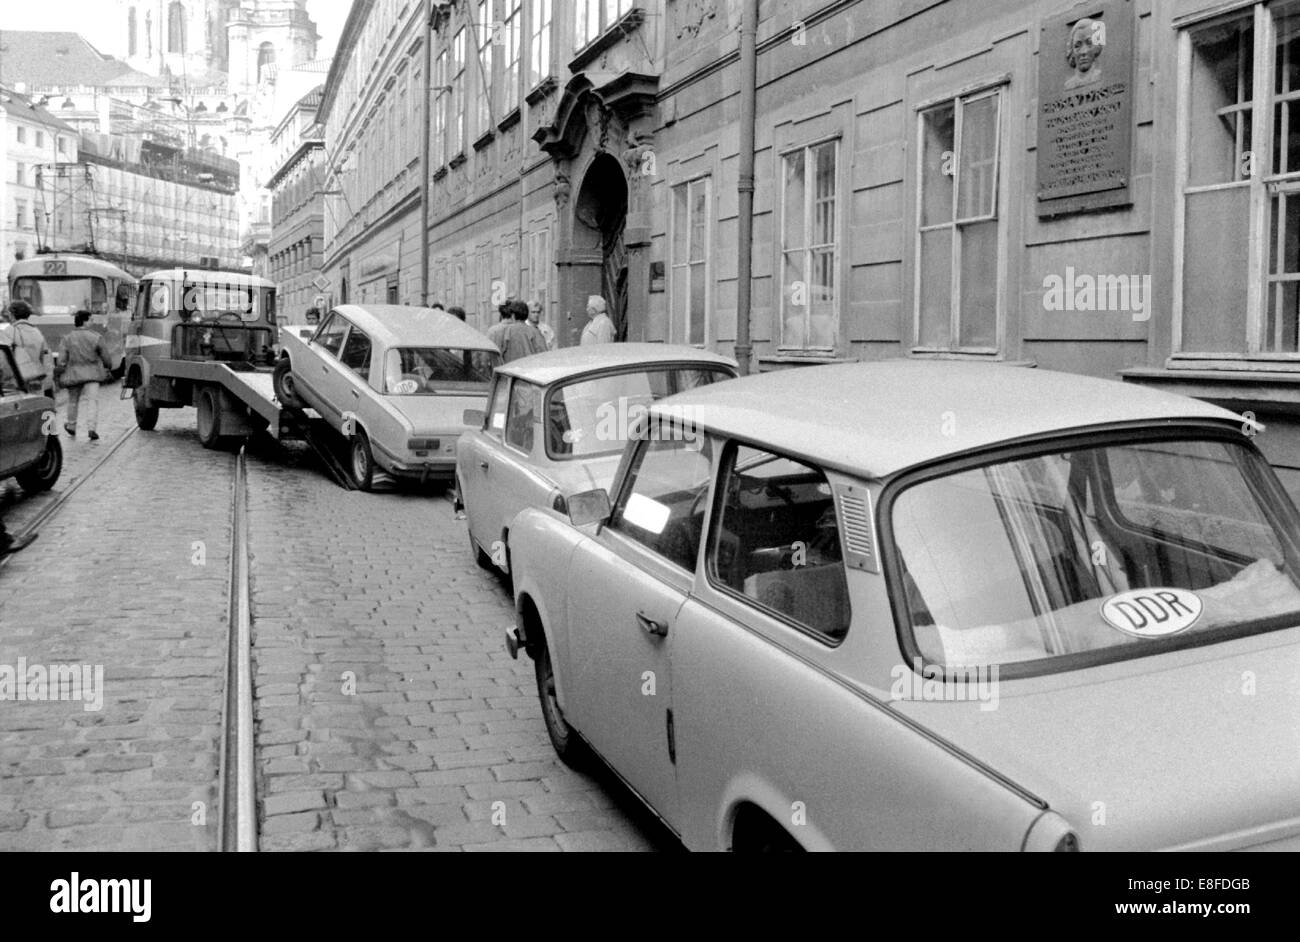 Le automobili sono trainato a Praga, Cecoslovacchia, ottobre 1989. Migliaia di cittadini della RDT aveva occupato la sede della Federal ambasciata tedesca in Cecoslovacchia. Alla fine di settembre 1989 le autorità della RDT consentito l'uscita dei loro cittadini, che in conseguenza finale ha portato alla caduta del muro e dalla riunificazione tedesca. Foto Stock